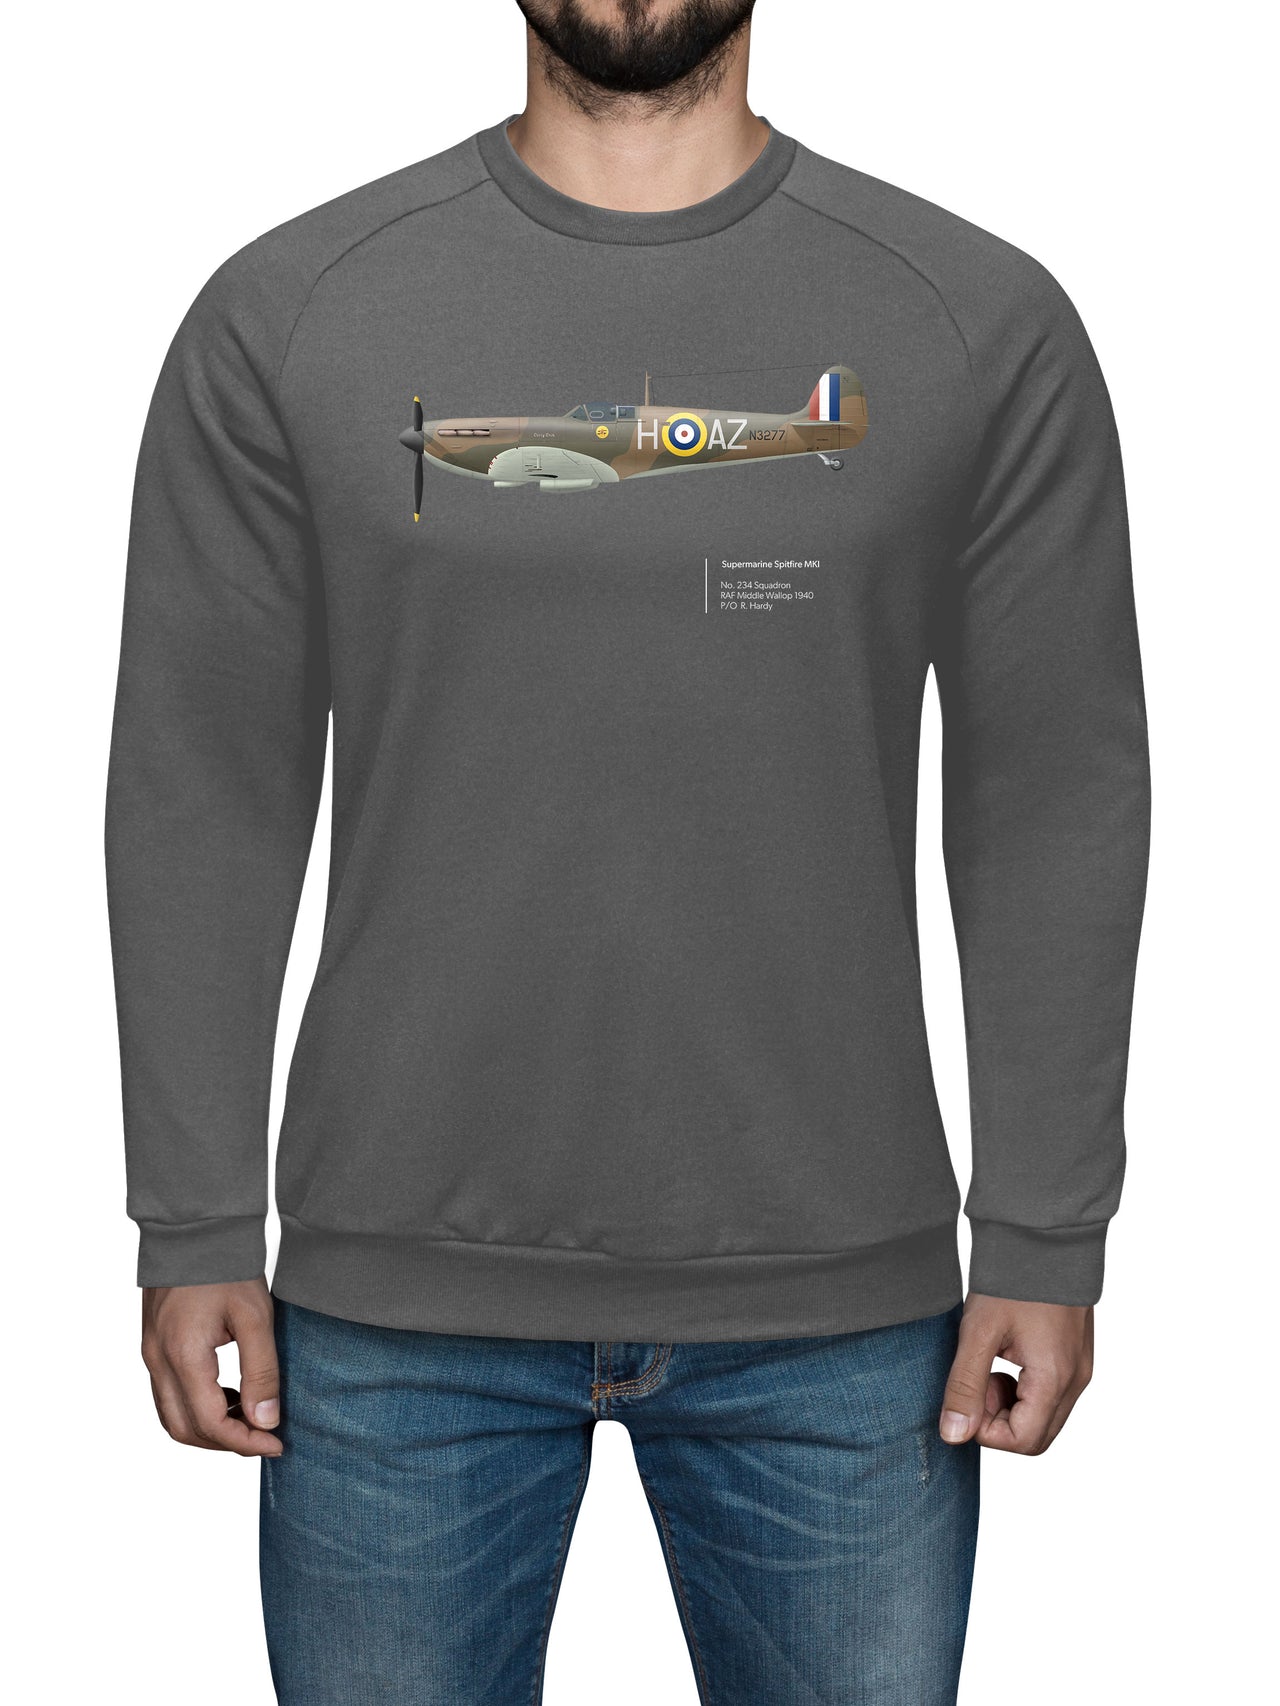 Spitfire 234SQN - Sweat Shirt